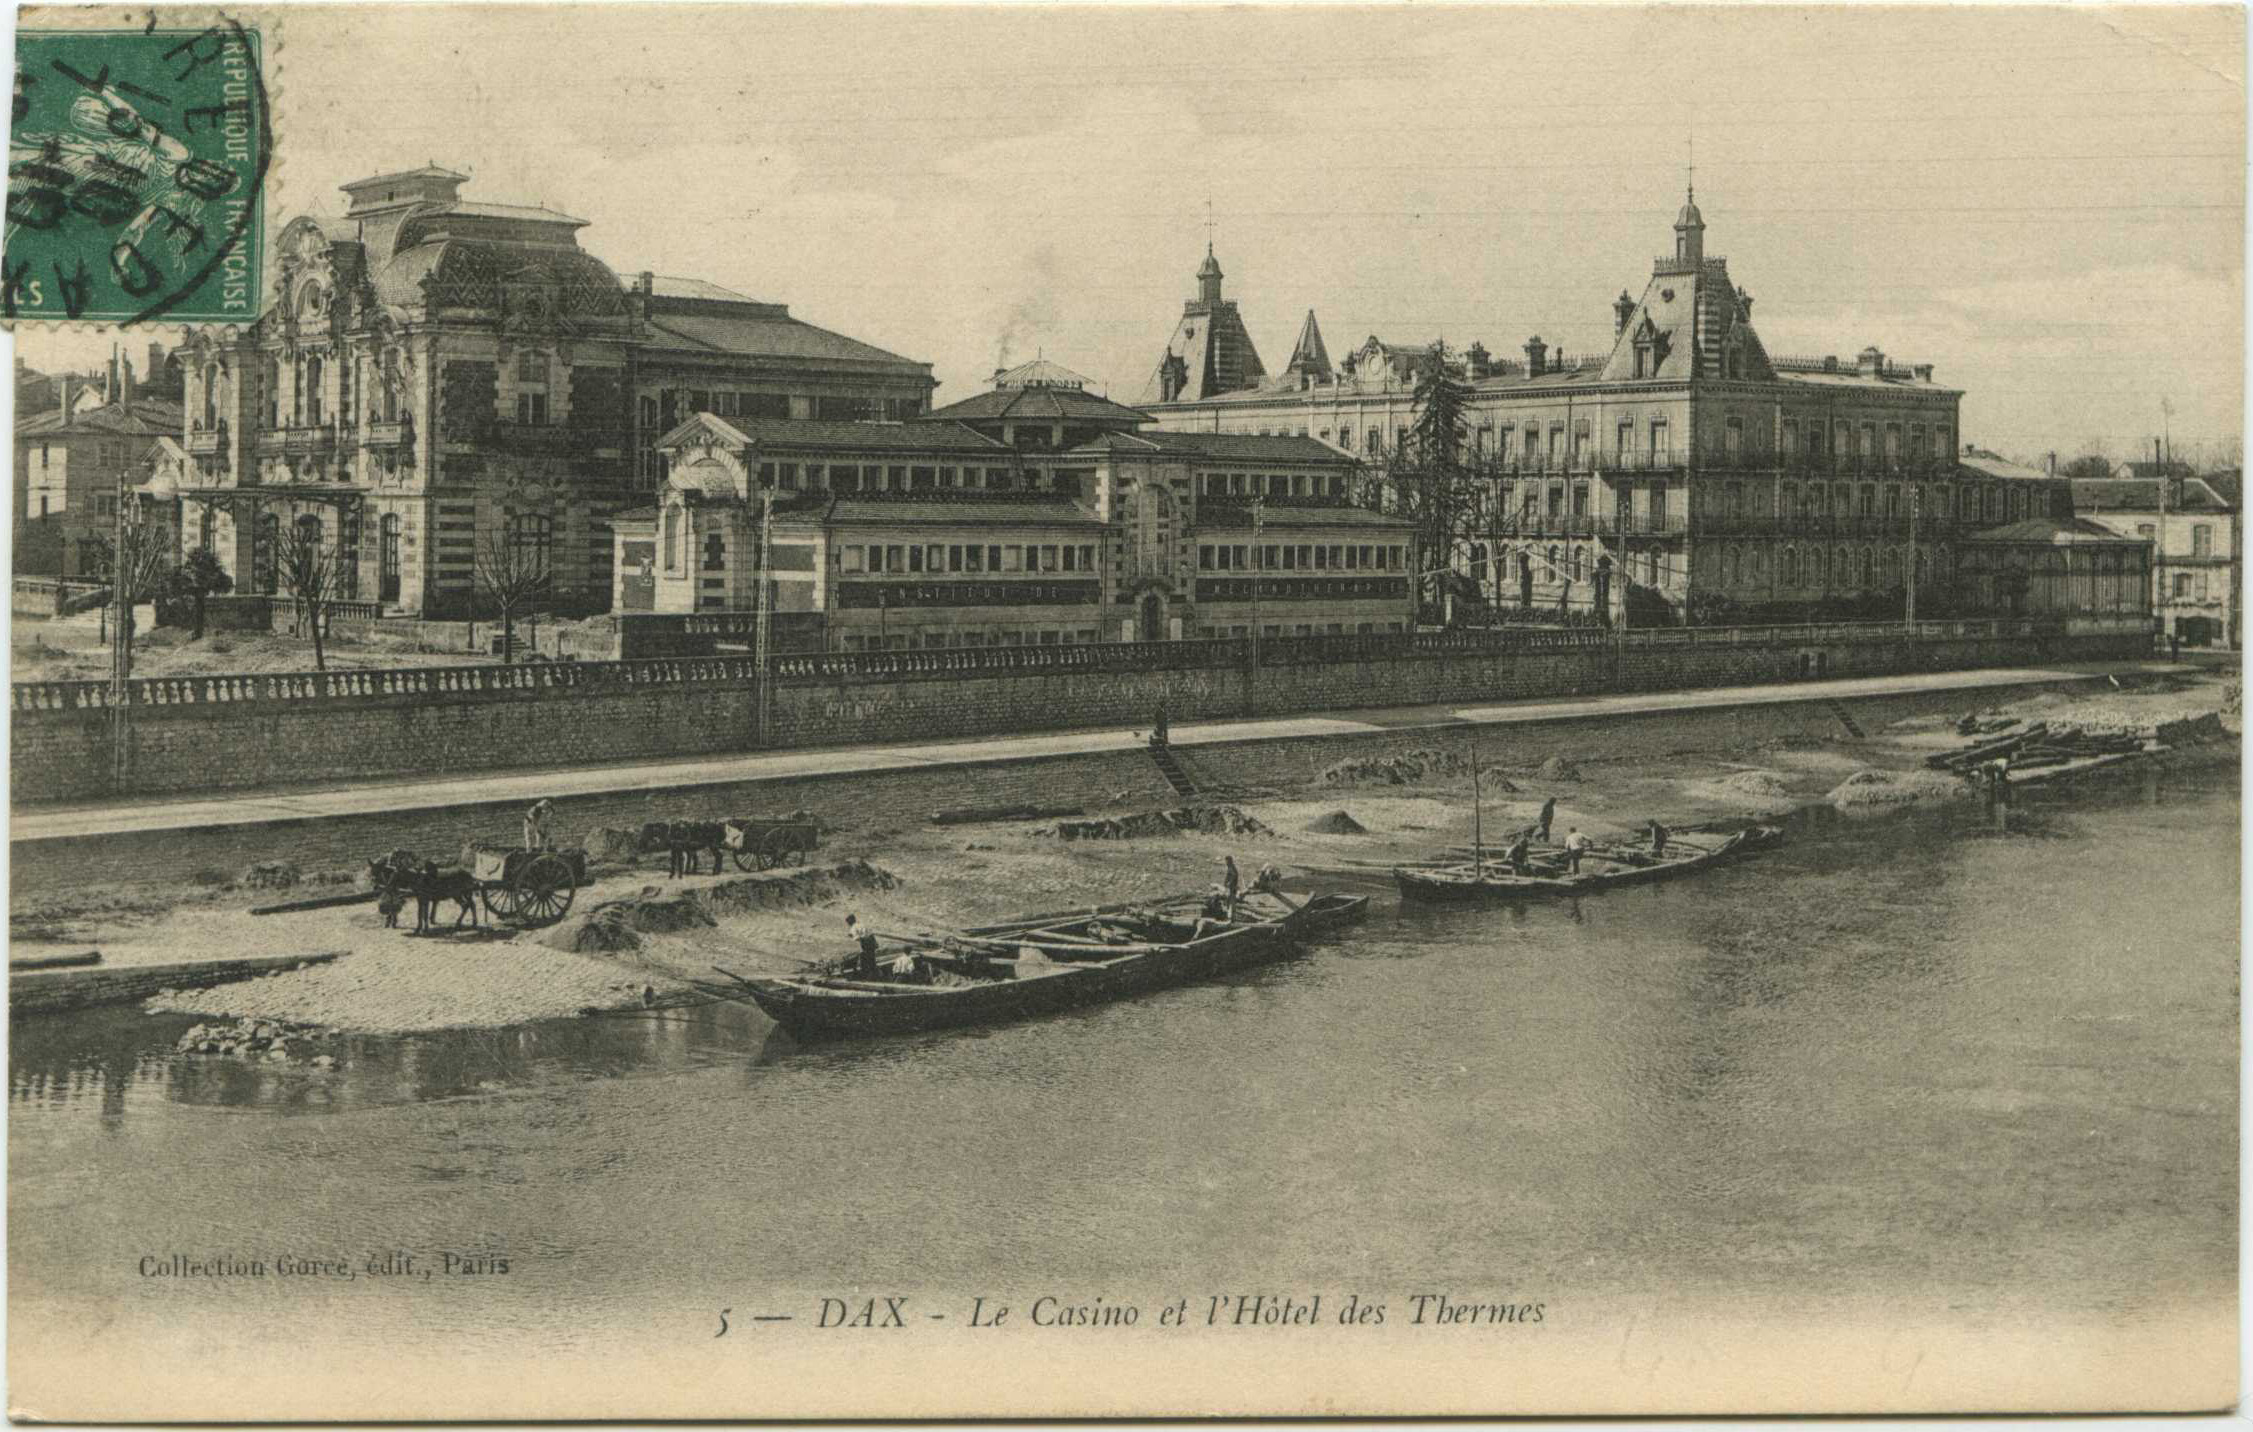 Dax - Le Casino et l'Hôtel des Thermes